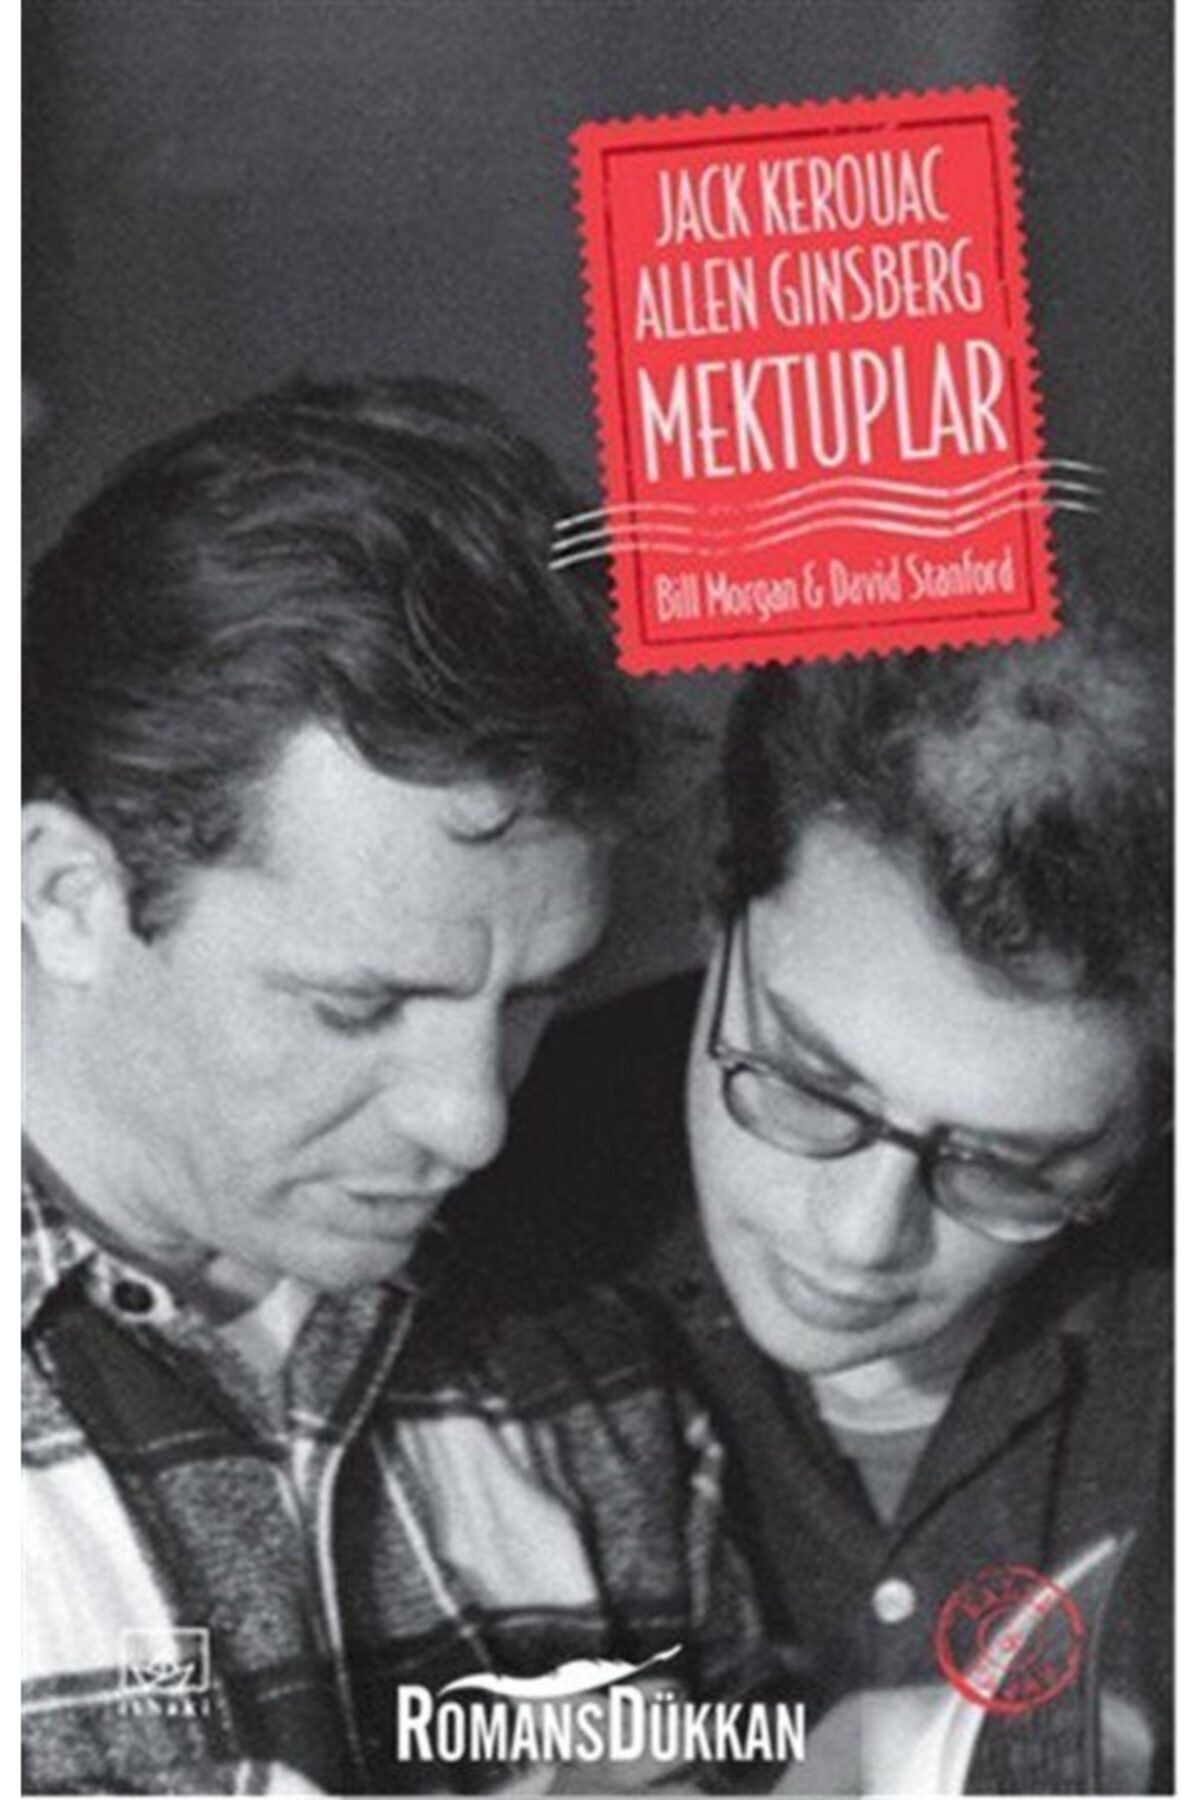 İthaki Yayınları Jack Kerouac Ve Allen Ginsberg: Mektuplar-Bill Morgan - David Stanford